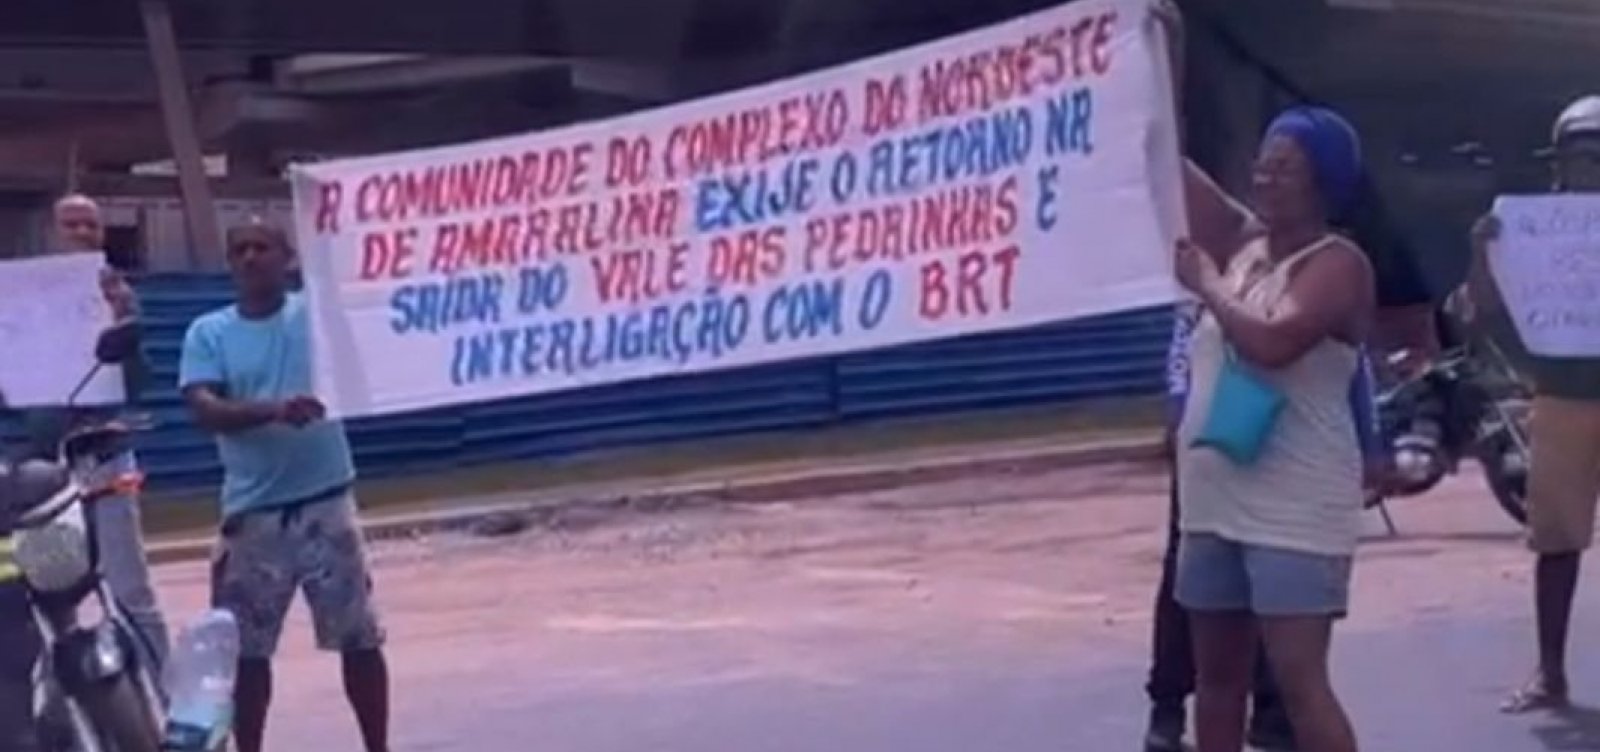 Moradores do Nordeste de Amaralina realizam manifestação pedindo interligação do bairro com o BRT